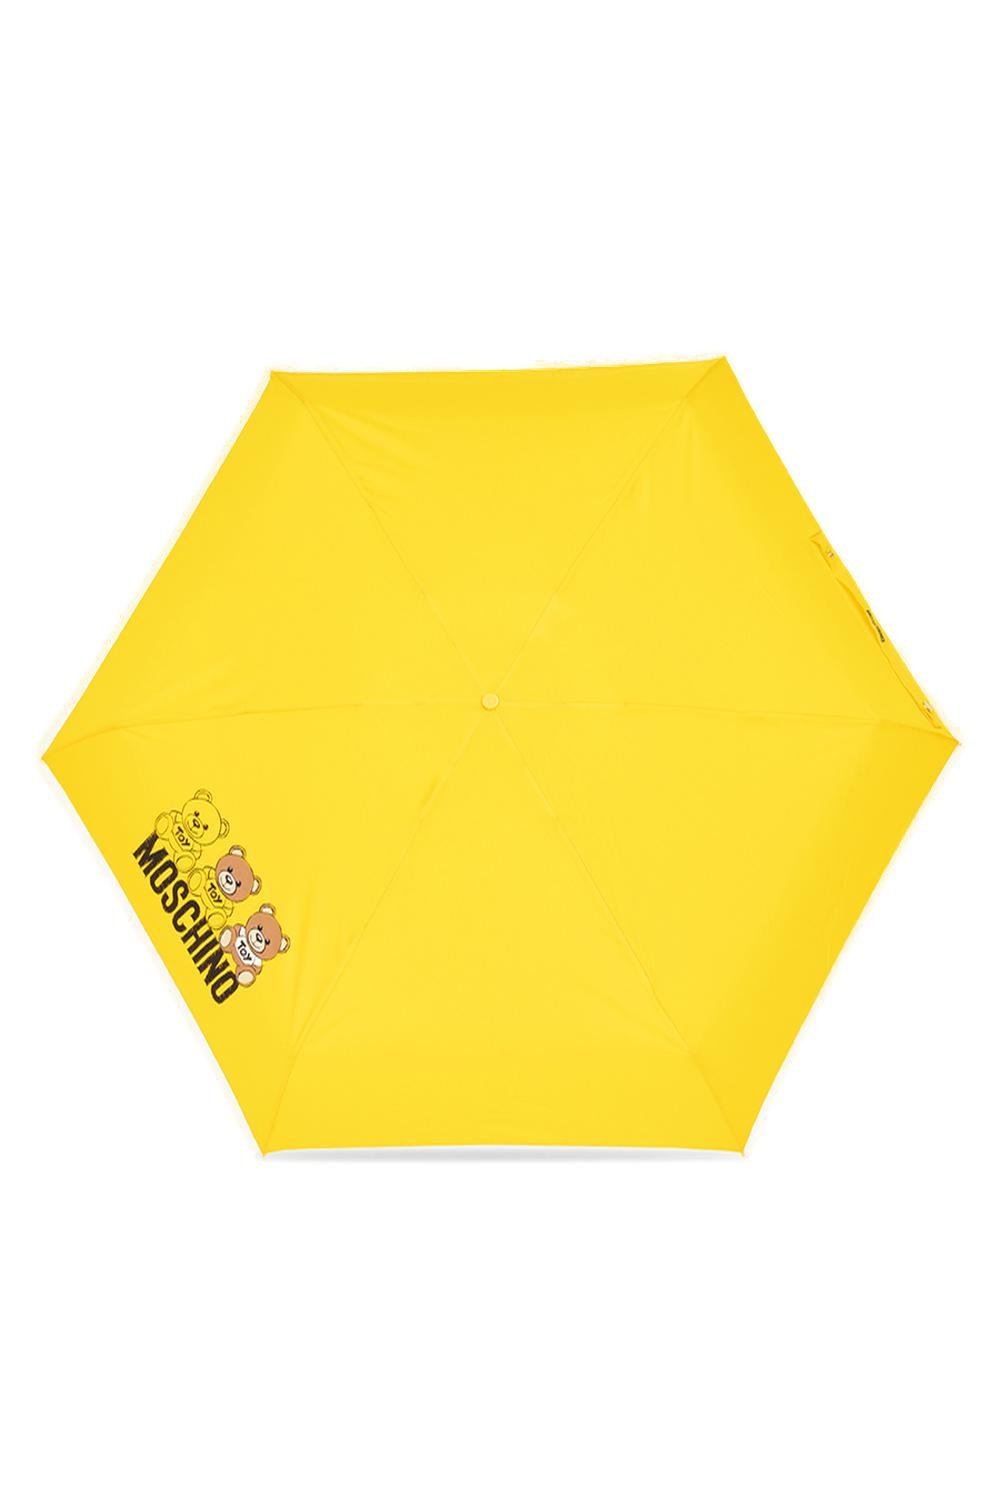 Moschino 테디 베어 프린트 컴팩트 우산